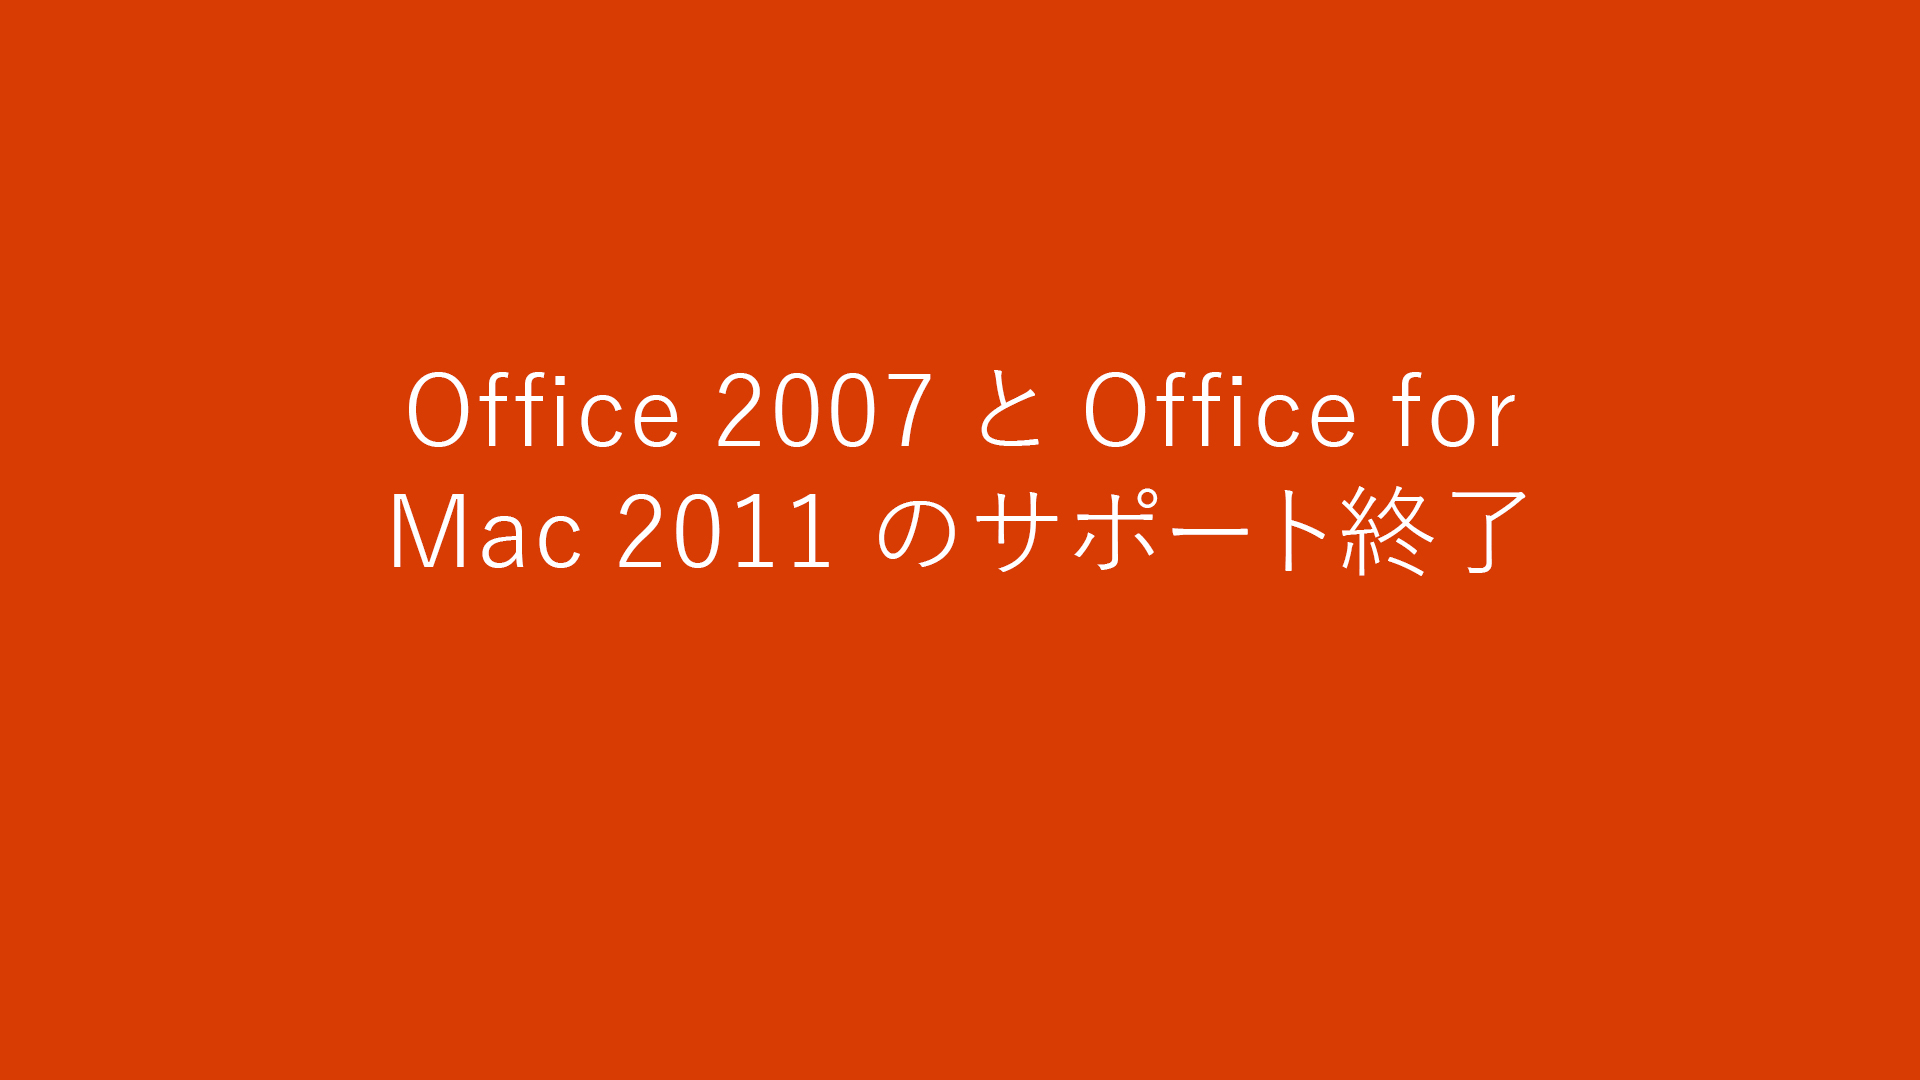 Office for Mac 2011 のサポート終了 - Microsoft サポート